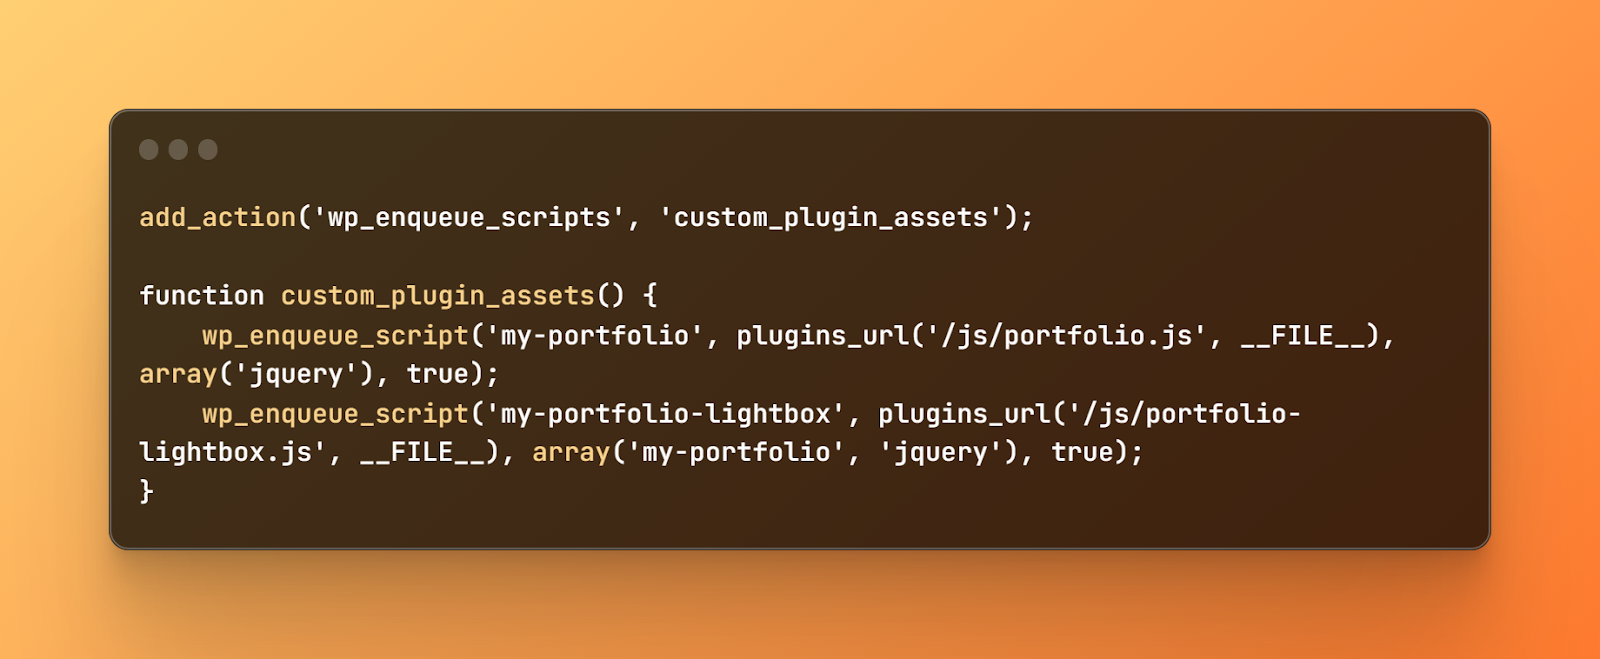 wp_enqueue_script code, add_action('wp_enqueue_scripts', 'custom_plugin_assets'); function custom_plugin_assets() {    wp_enqueue_script('my-portfolio', plugins_url('/js/portfolio.js', __FILE__), array('jquery'), true);    wp_enqueue_script('my-portfolio-lightbox', plugins_url('/js/portfolio-lightbox.js', __FILE__) array('my-portfolio', 'jquery'), true);}